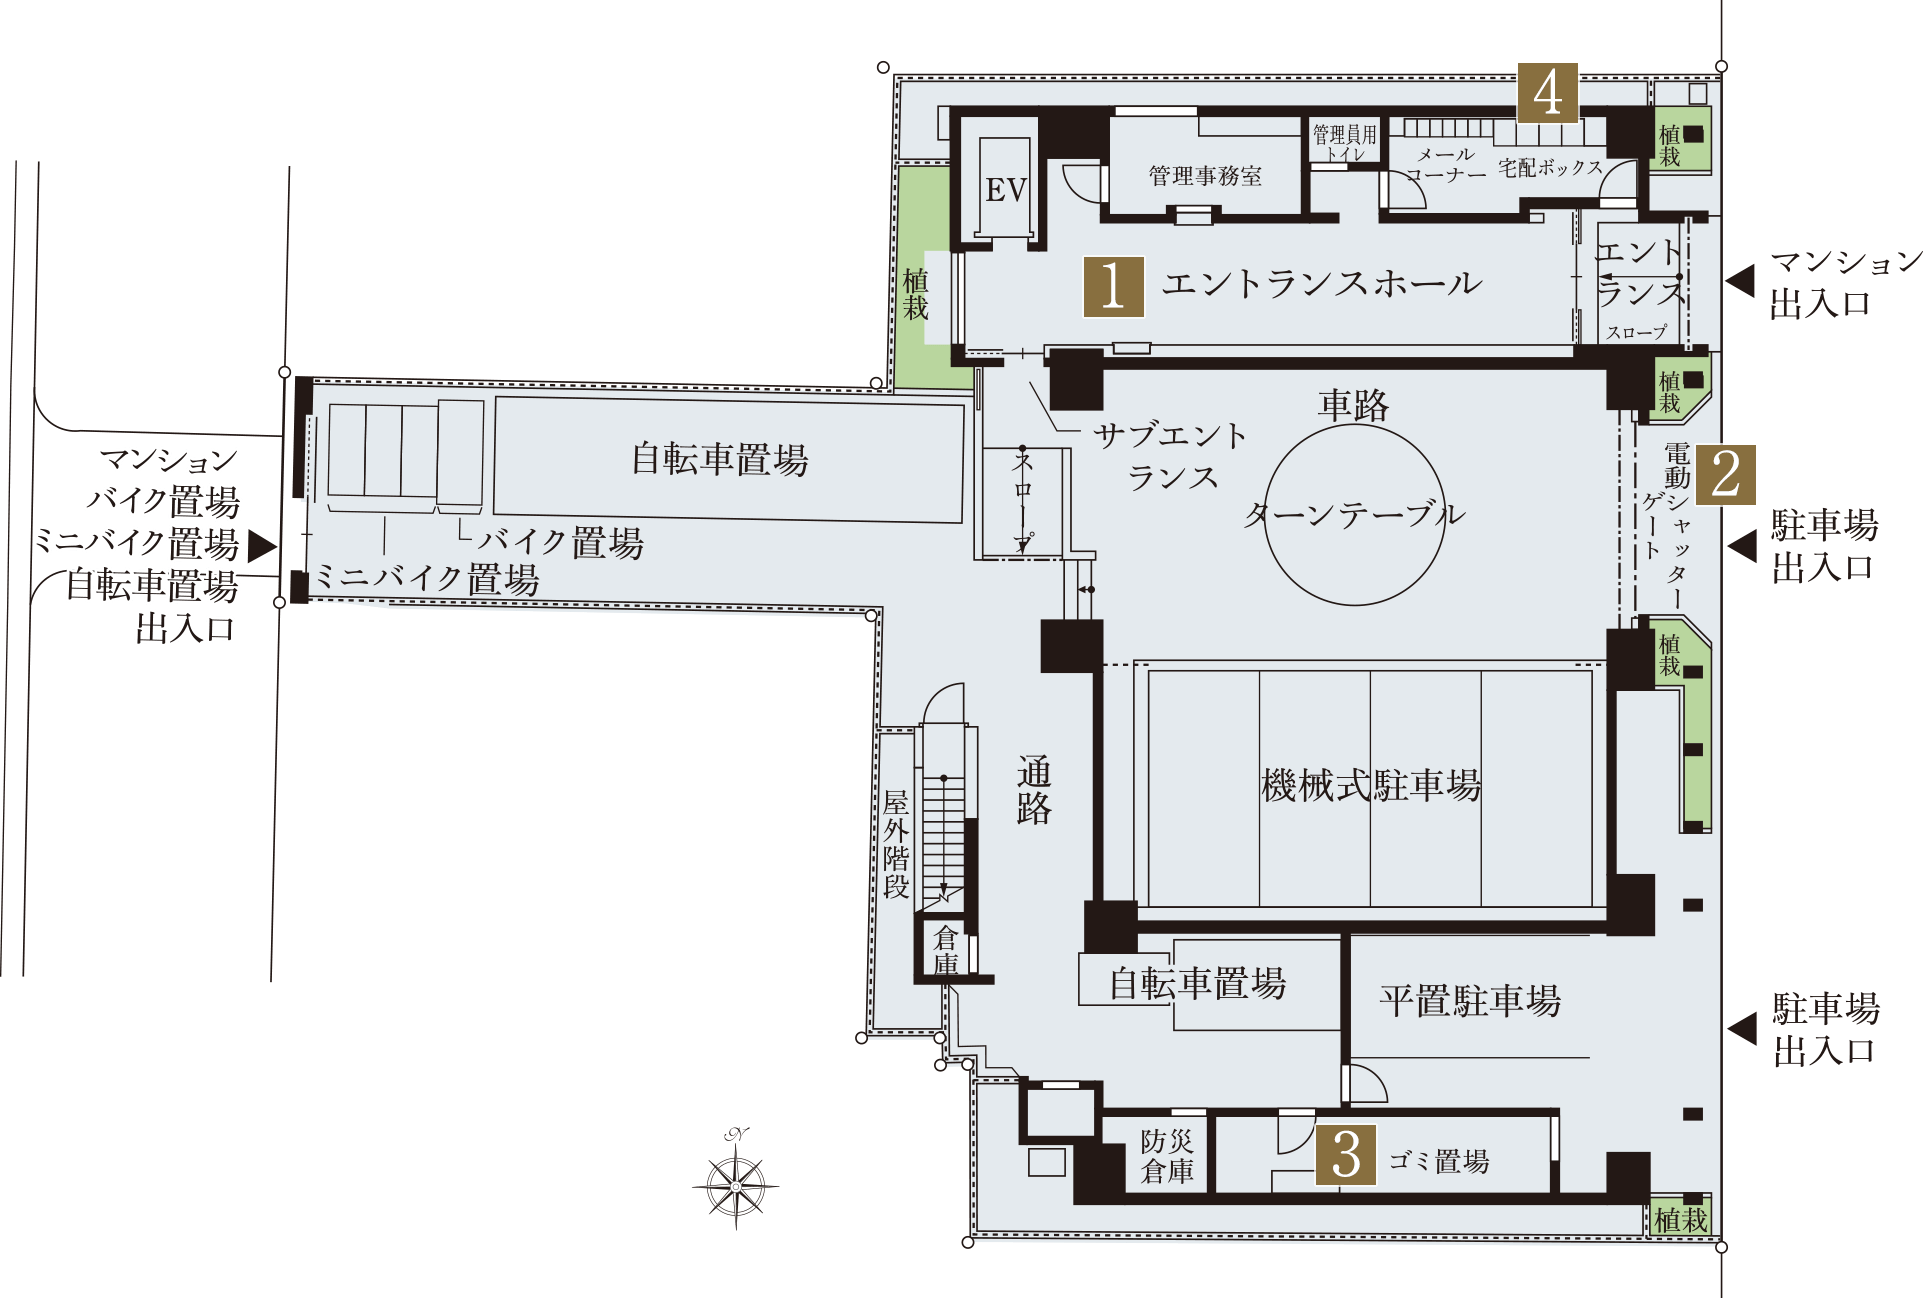 1階敷地配置概念図